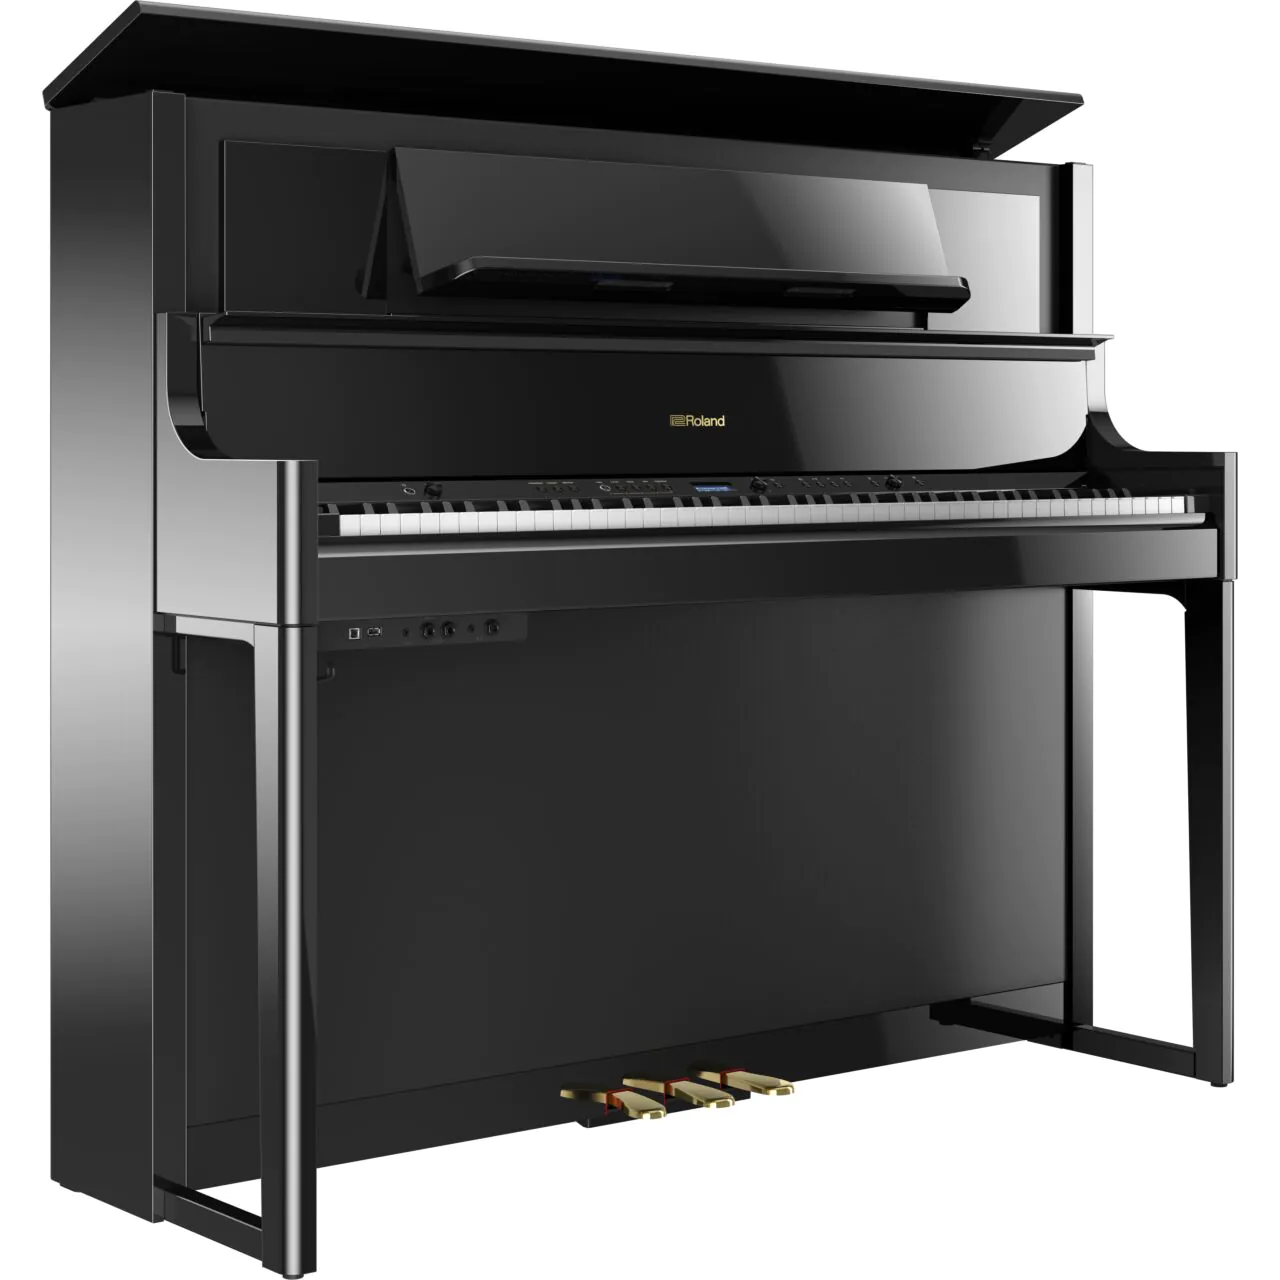 Das luxuriöse Piano mit acht Lautsprechern und Flügel-Sound